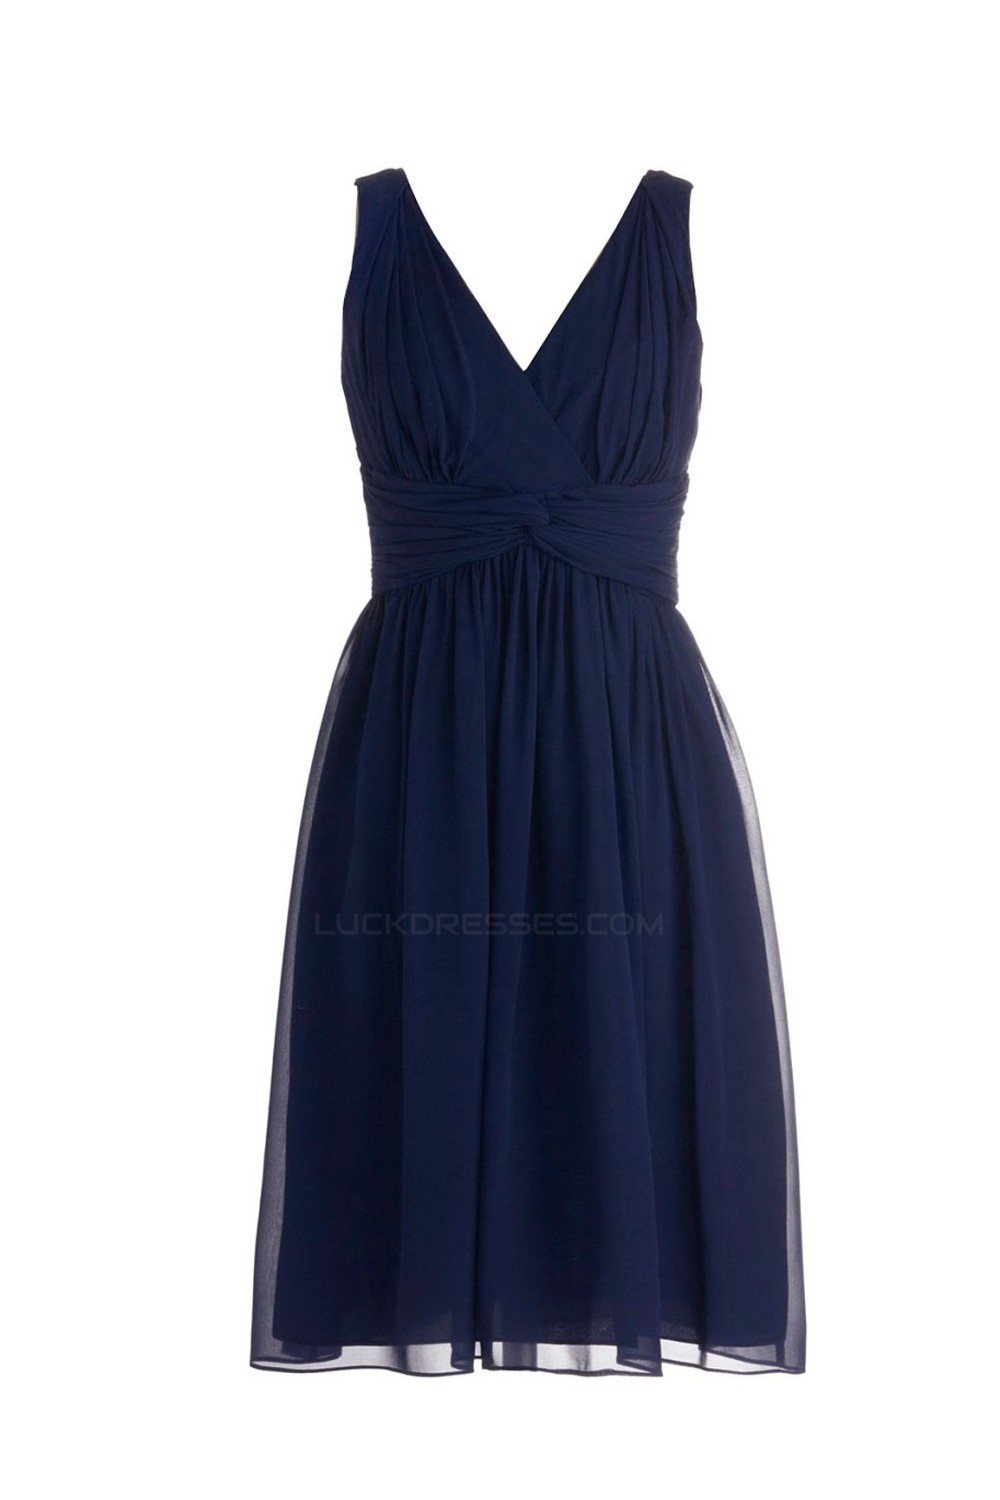 short navy blue dresses for wedding